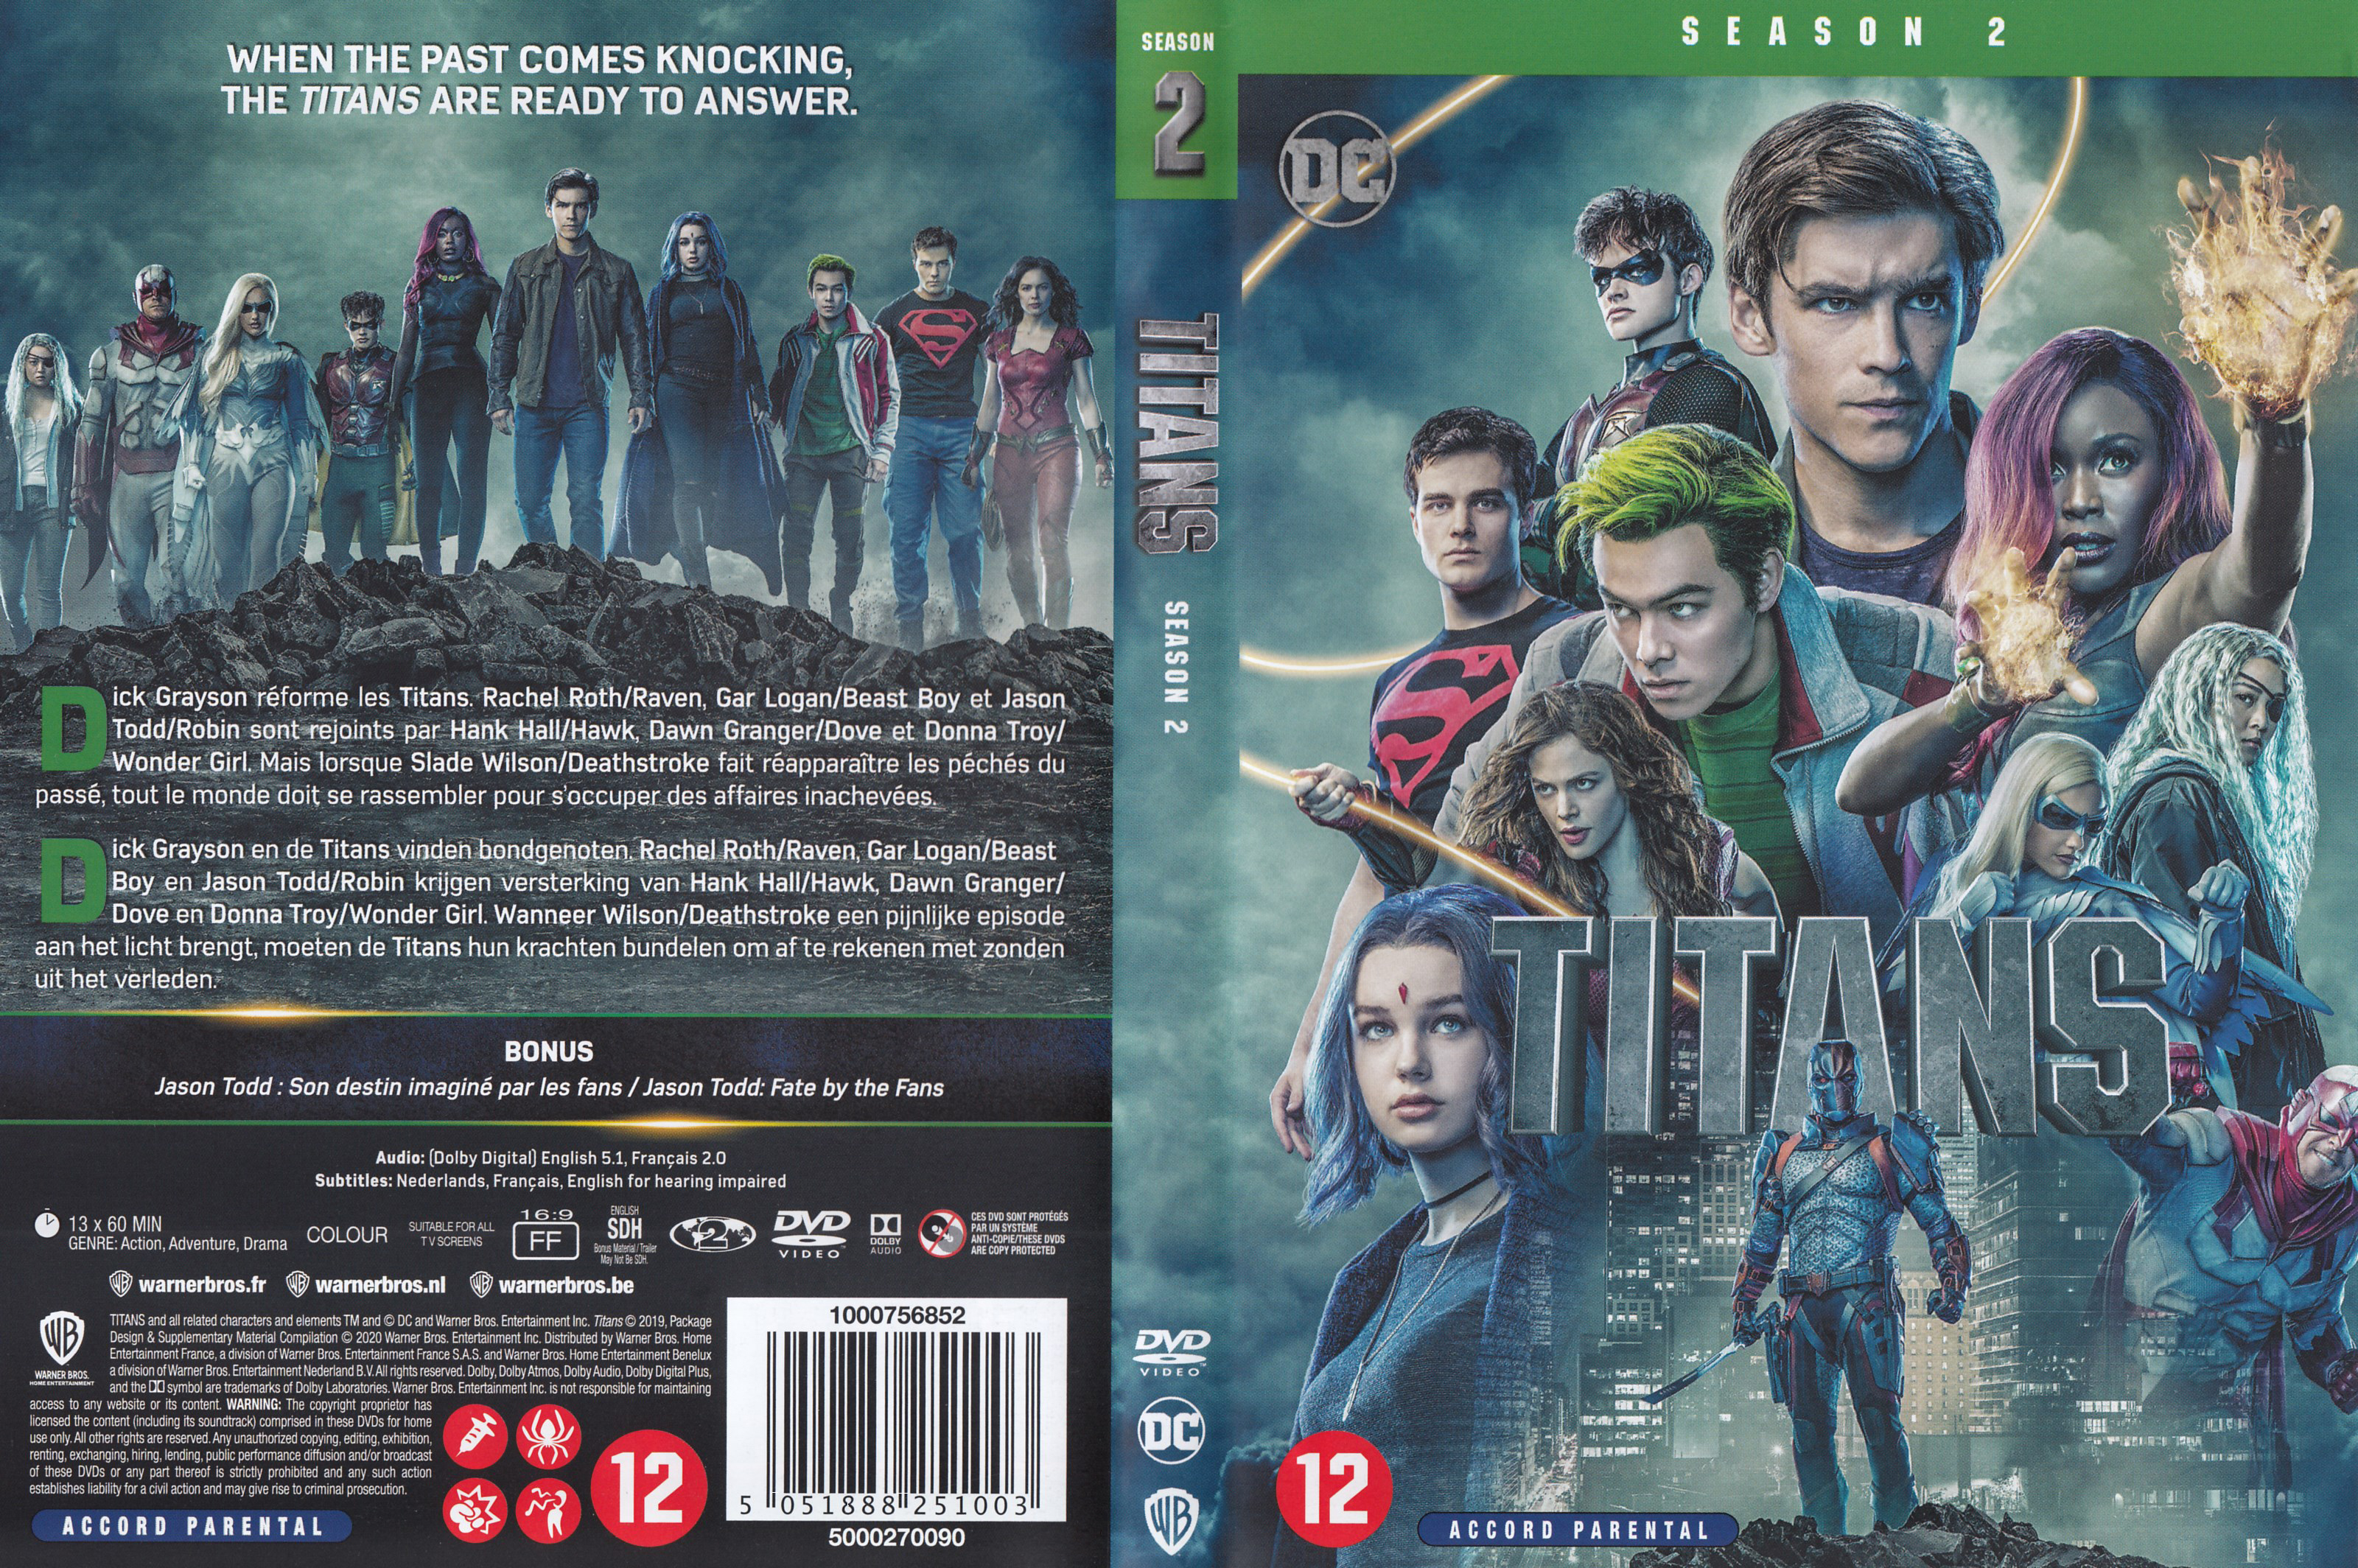 Jaquette DVD Titans saison 2